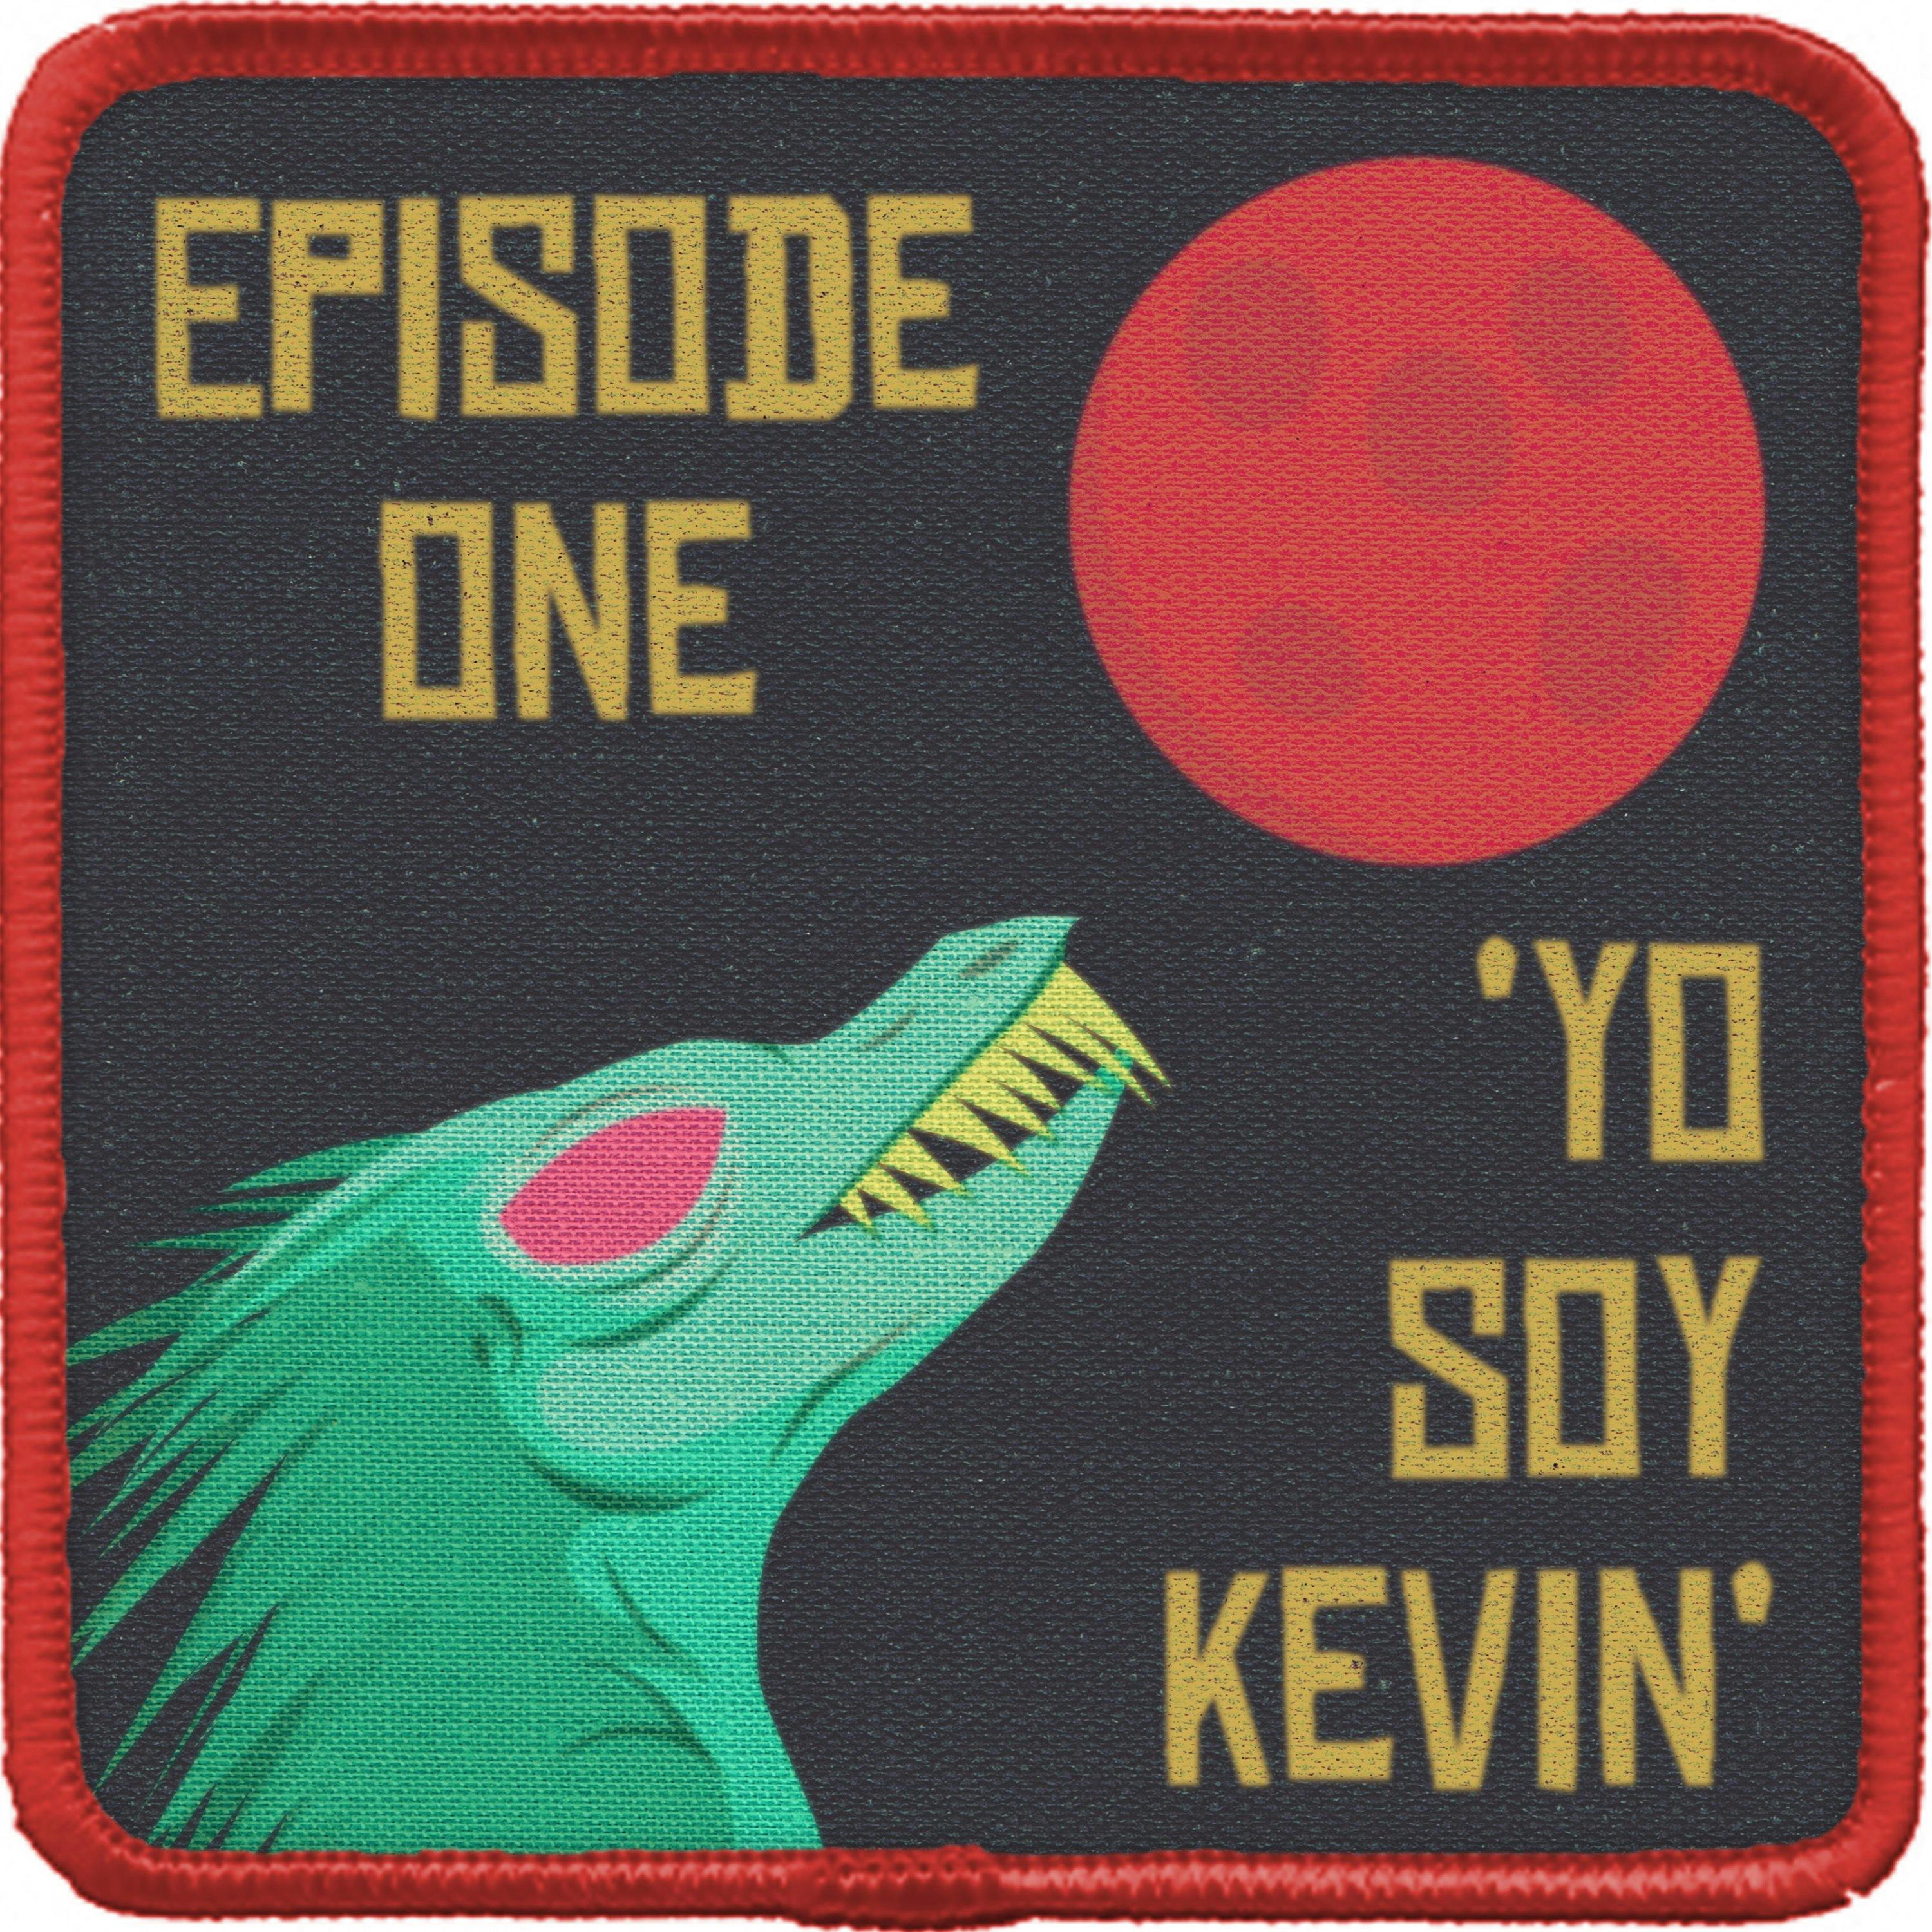 Season 2 Episode 1: Yo Soy Kevin